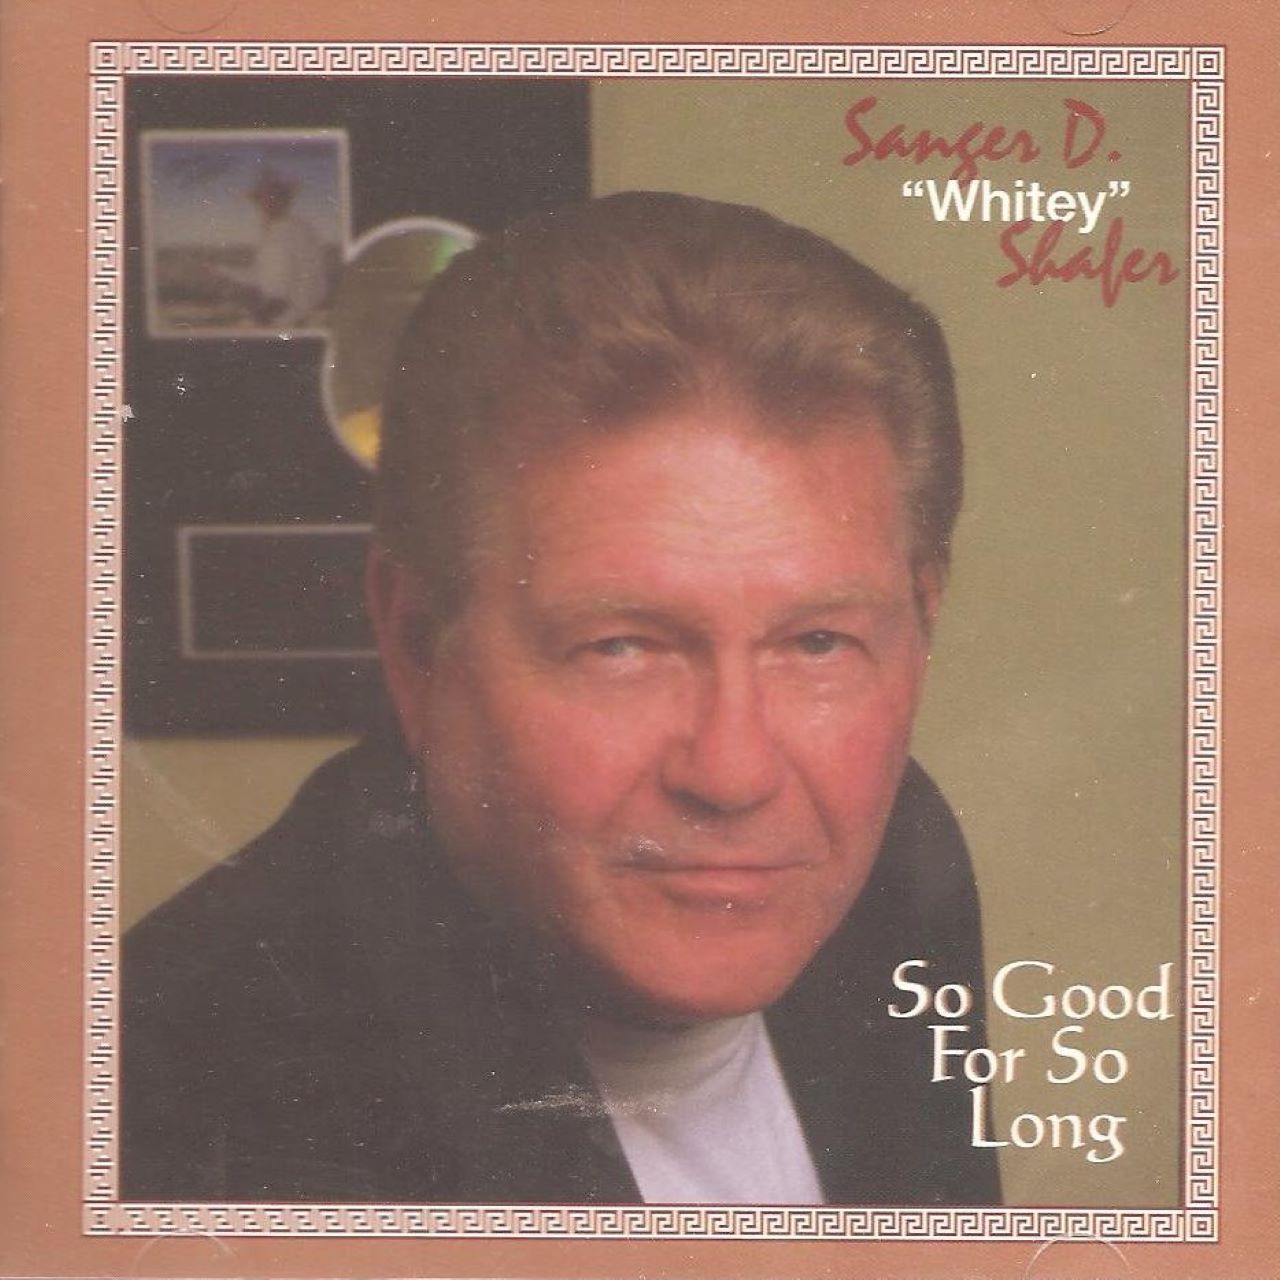 Sanger D. 'Whitey' Shaker - So Good For So Long cover album